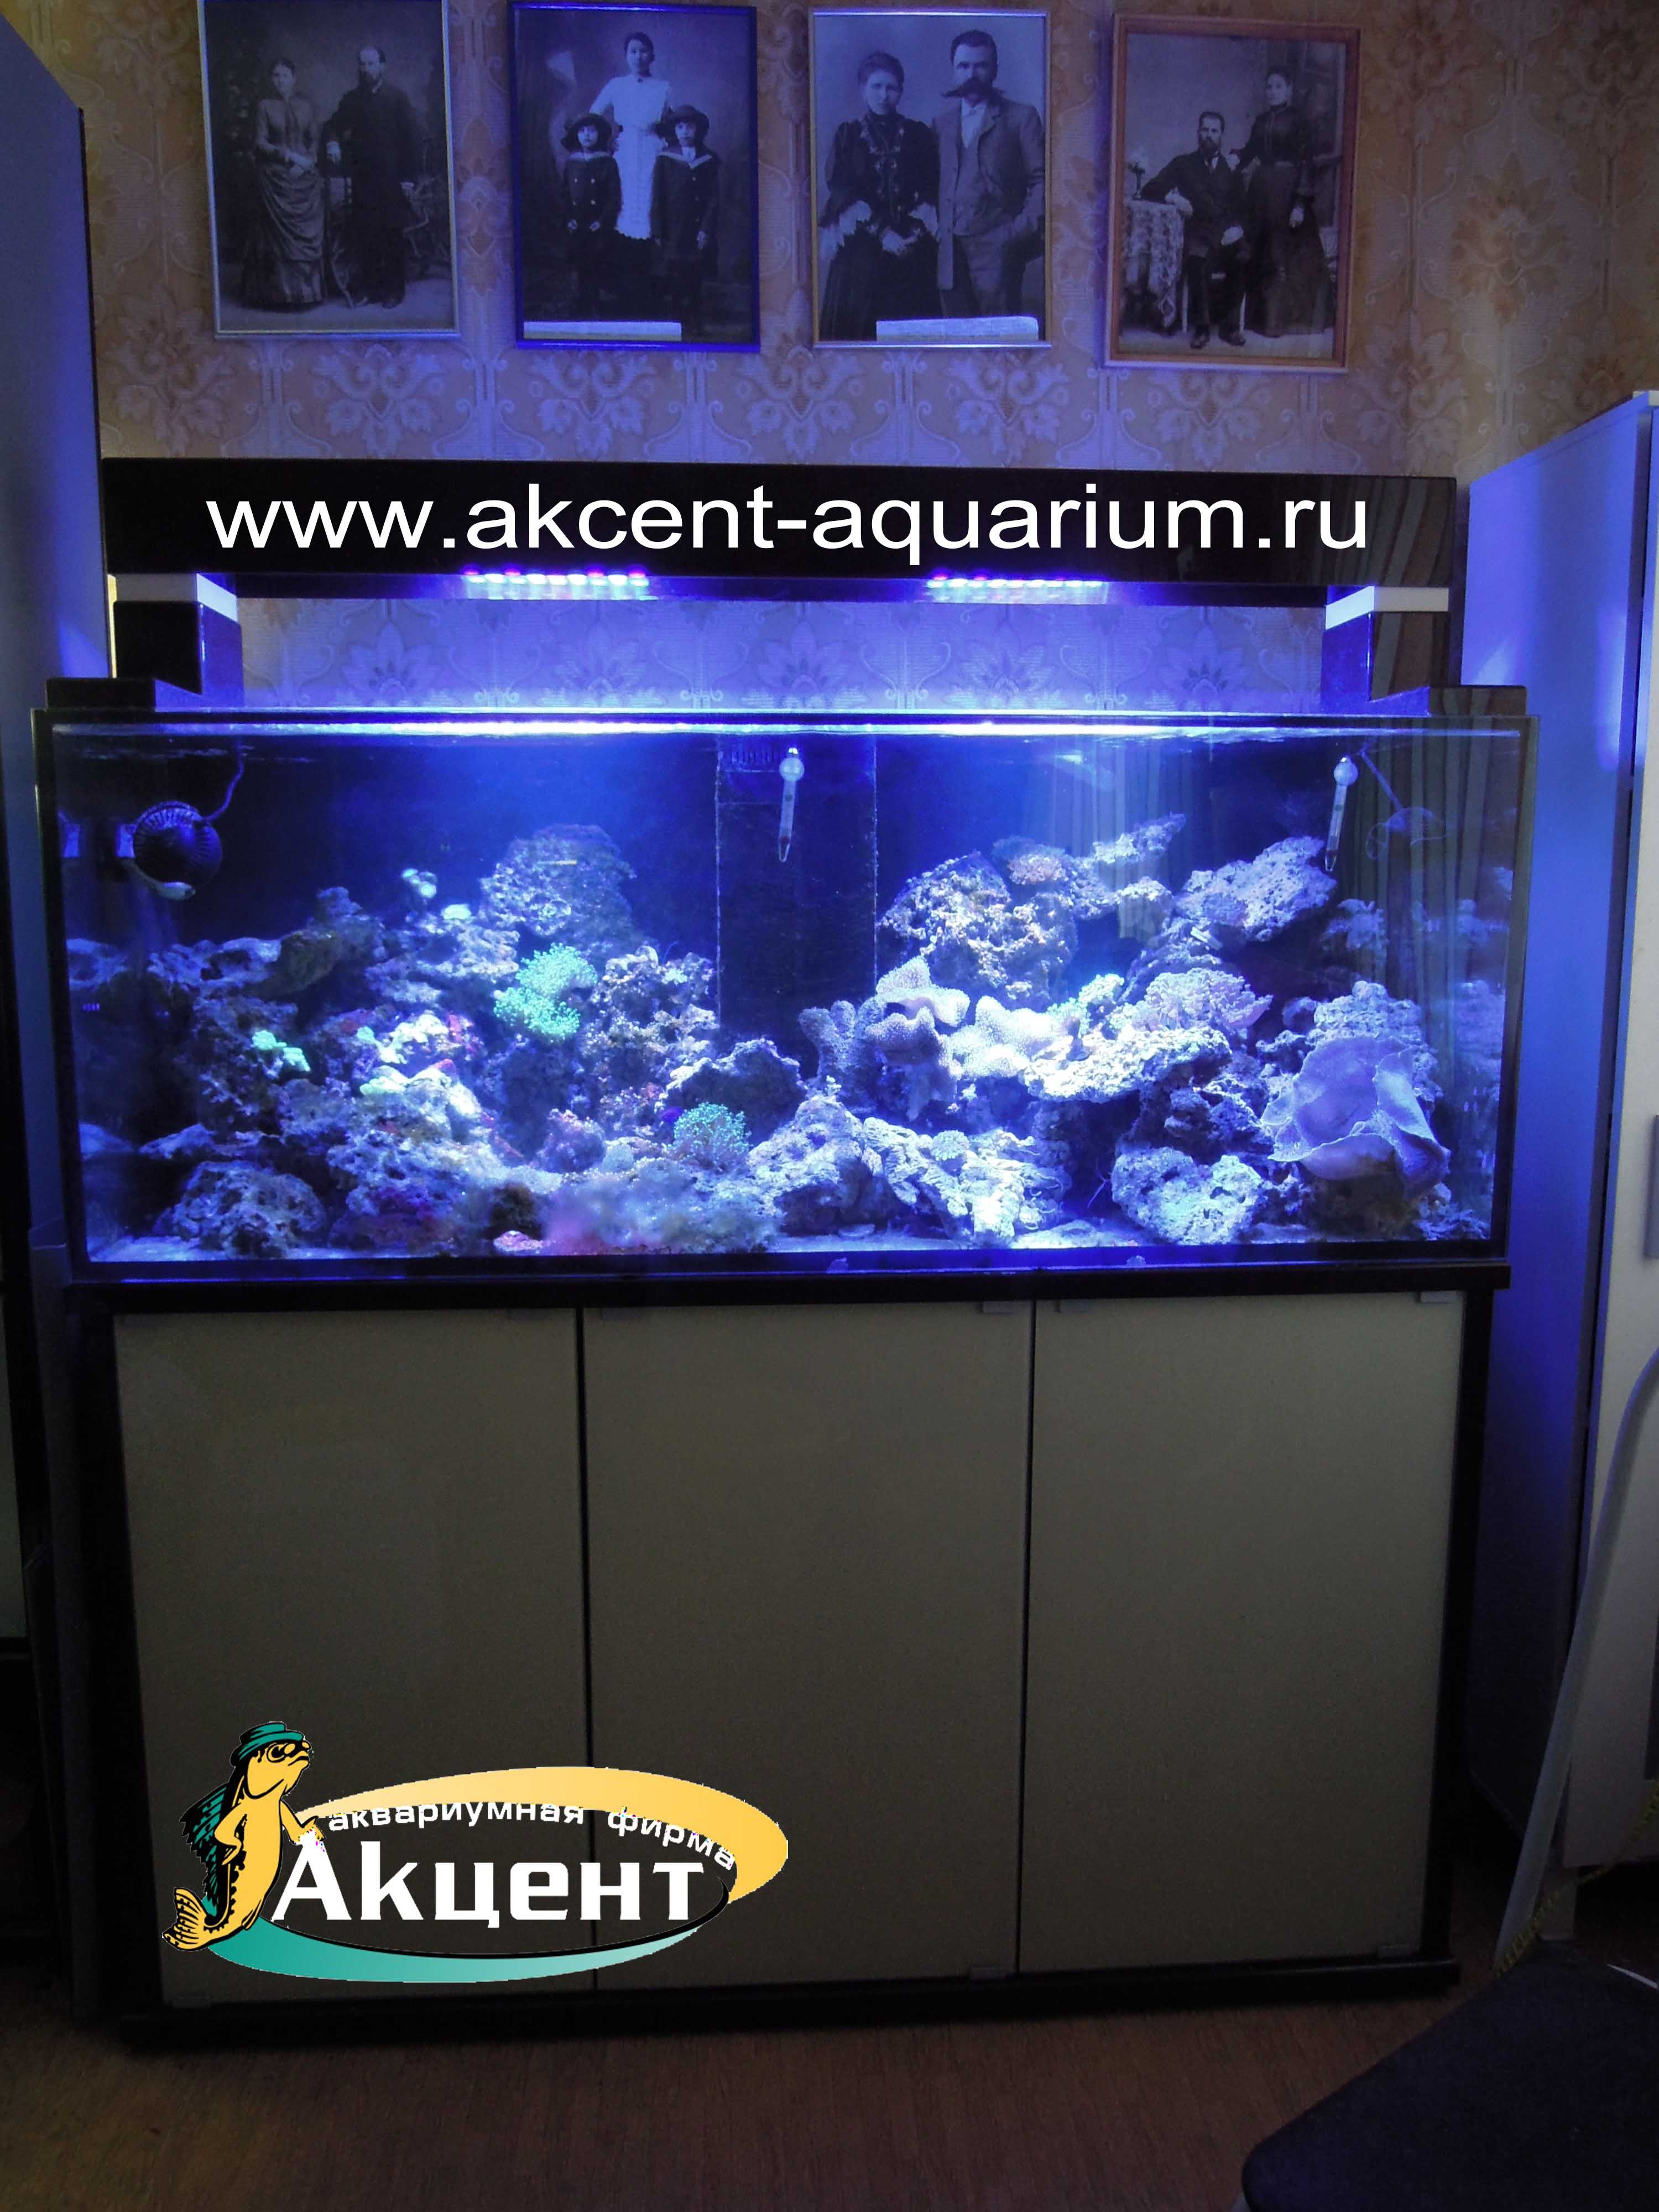 Акцент-аквариум, аквариум морской 450 литров,